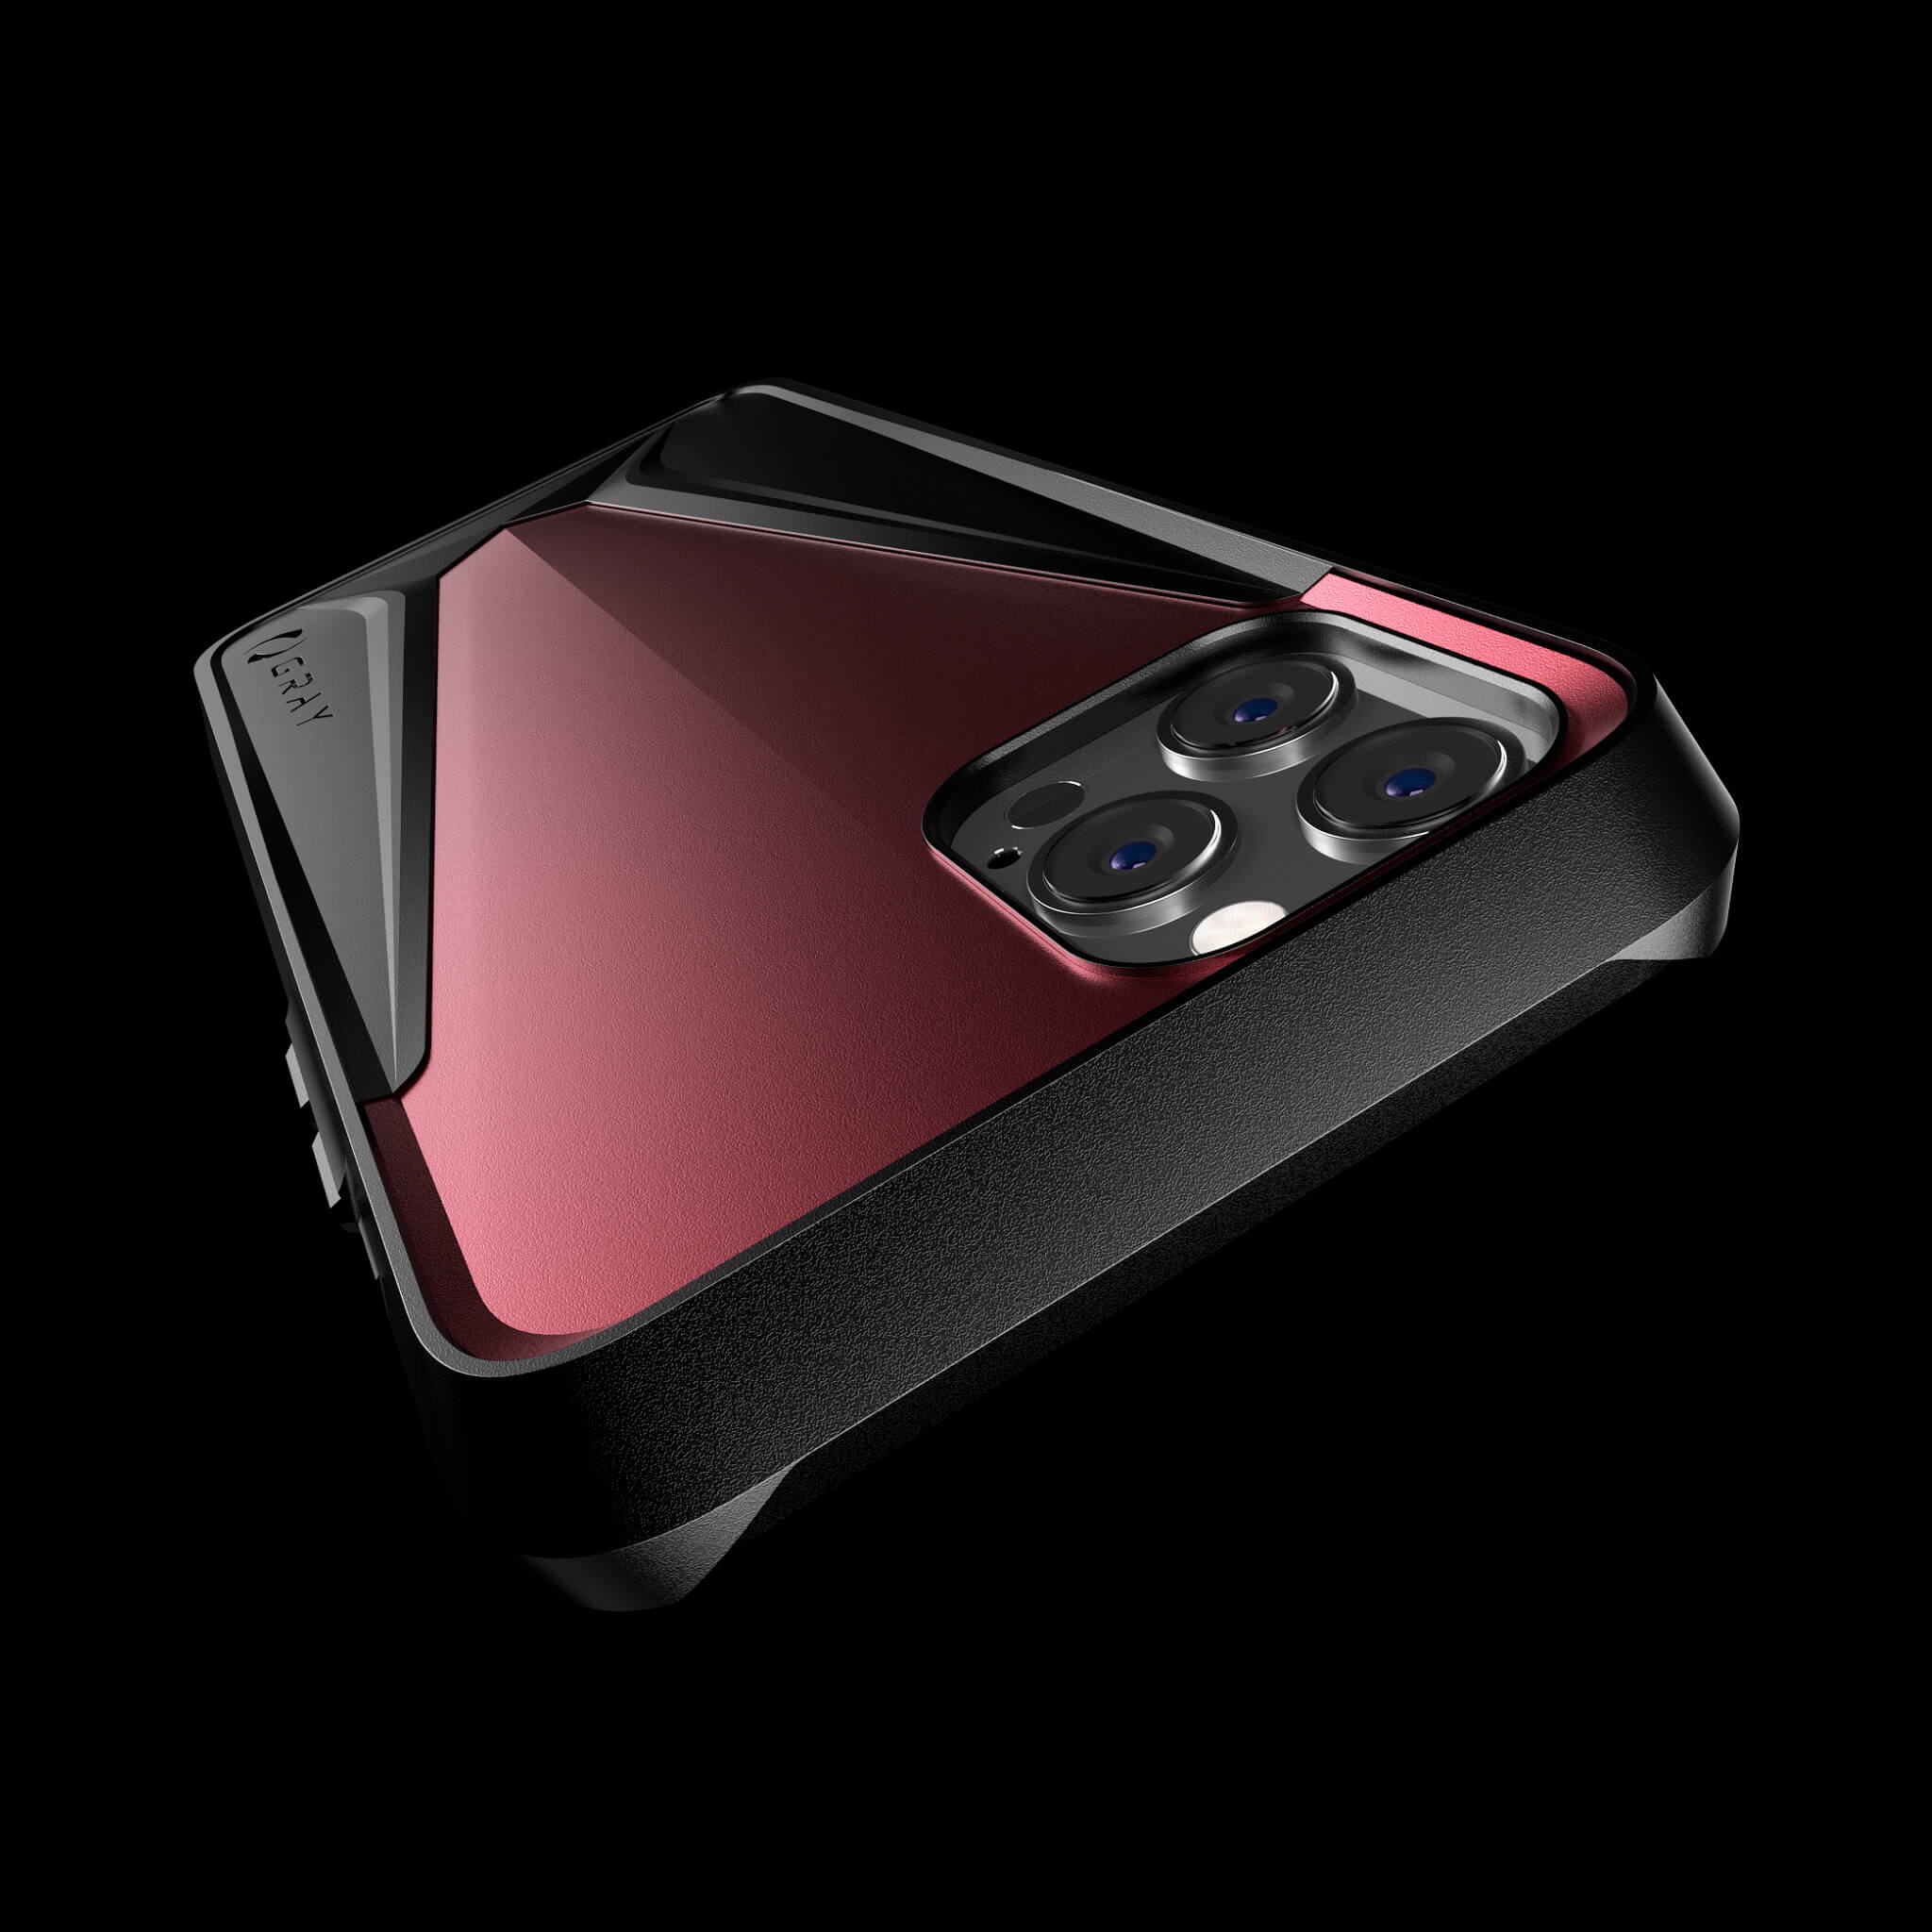 morpheus pulsar red aluminium metal luxury iPhone 12 pro case